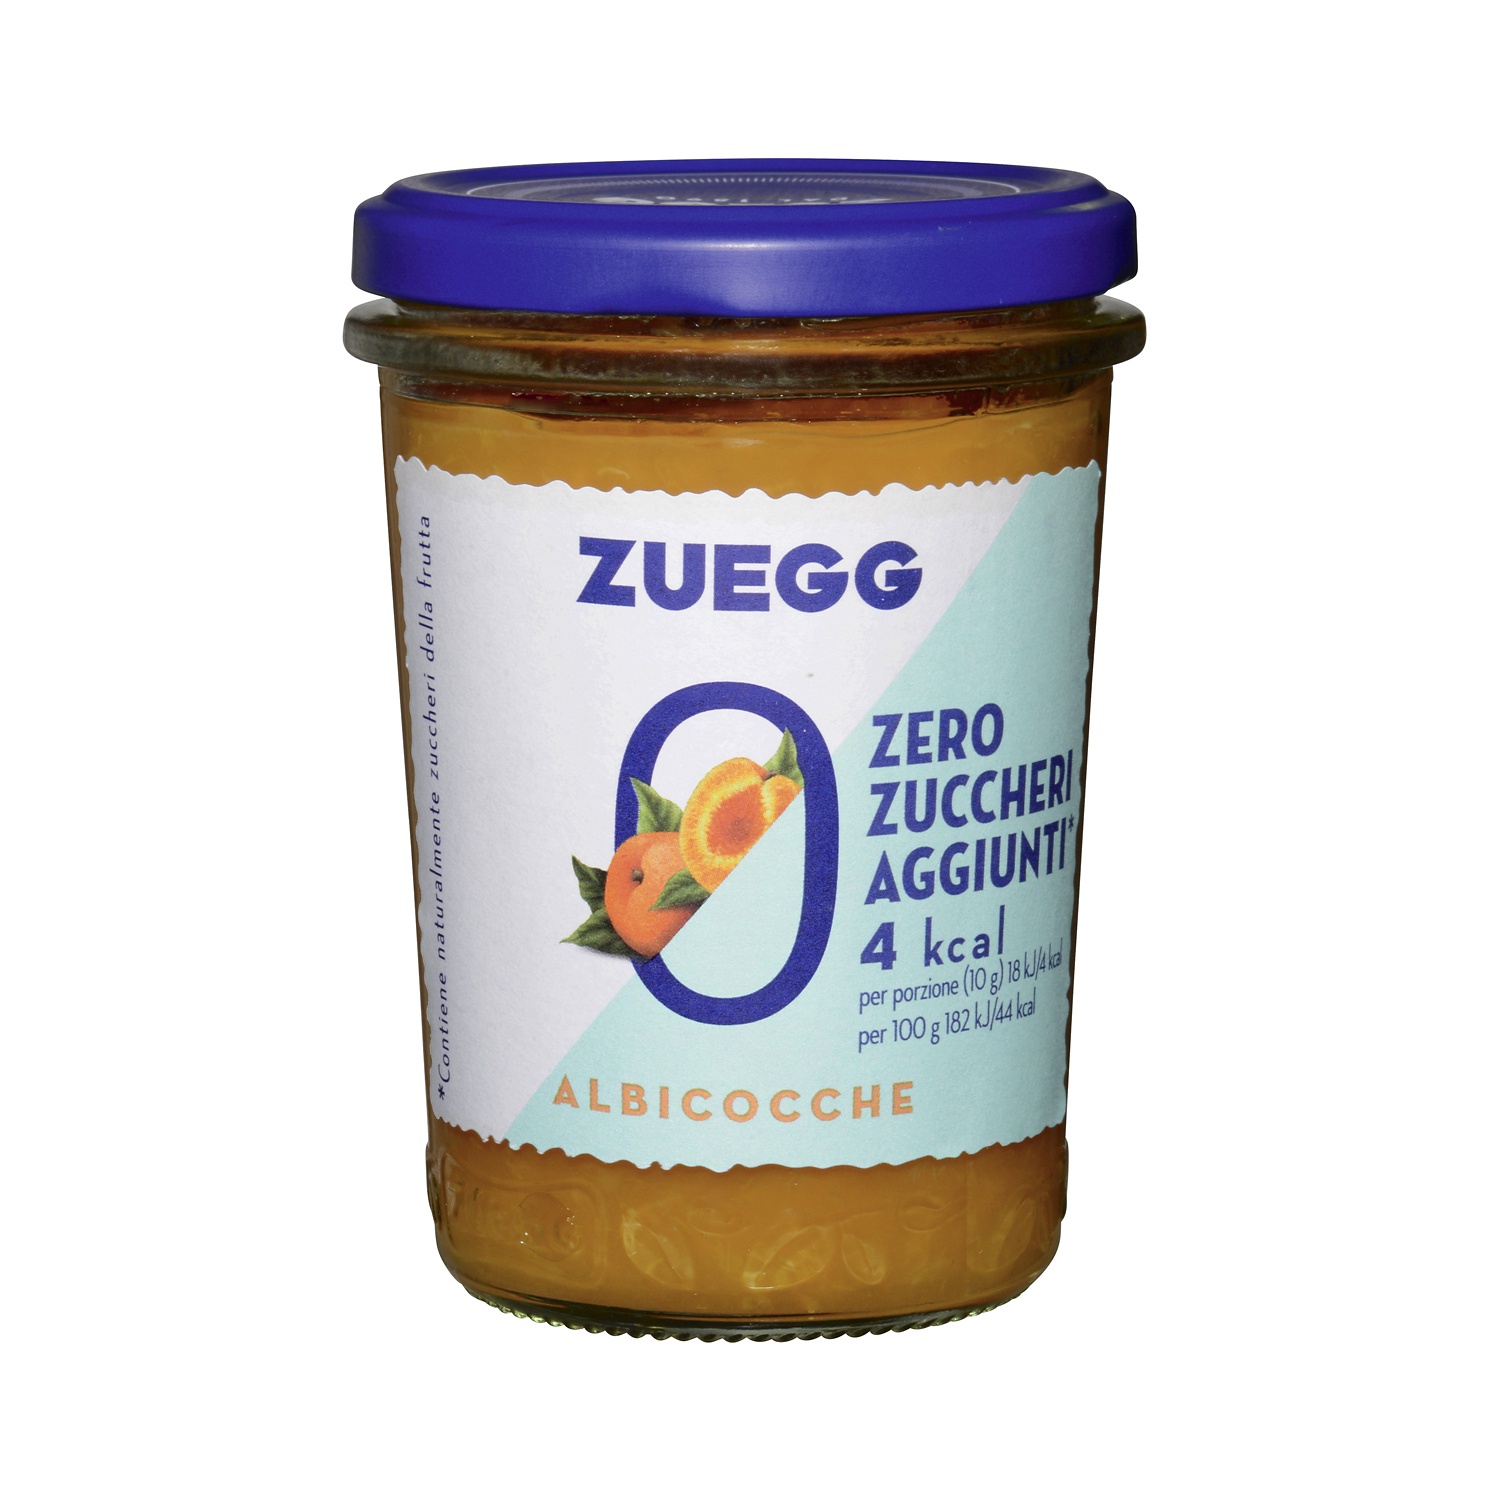 ZUEGG Zero Zuccheri aggiunti alle albicocche